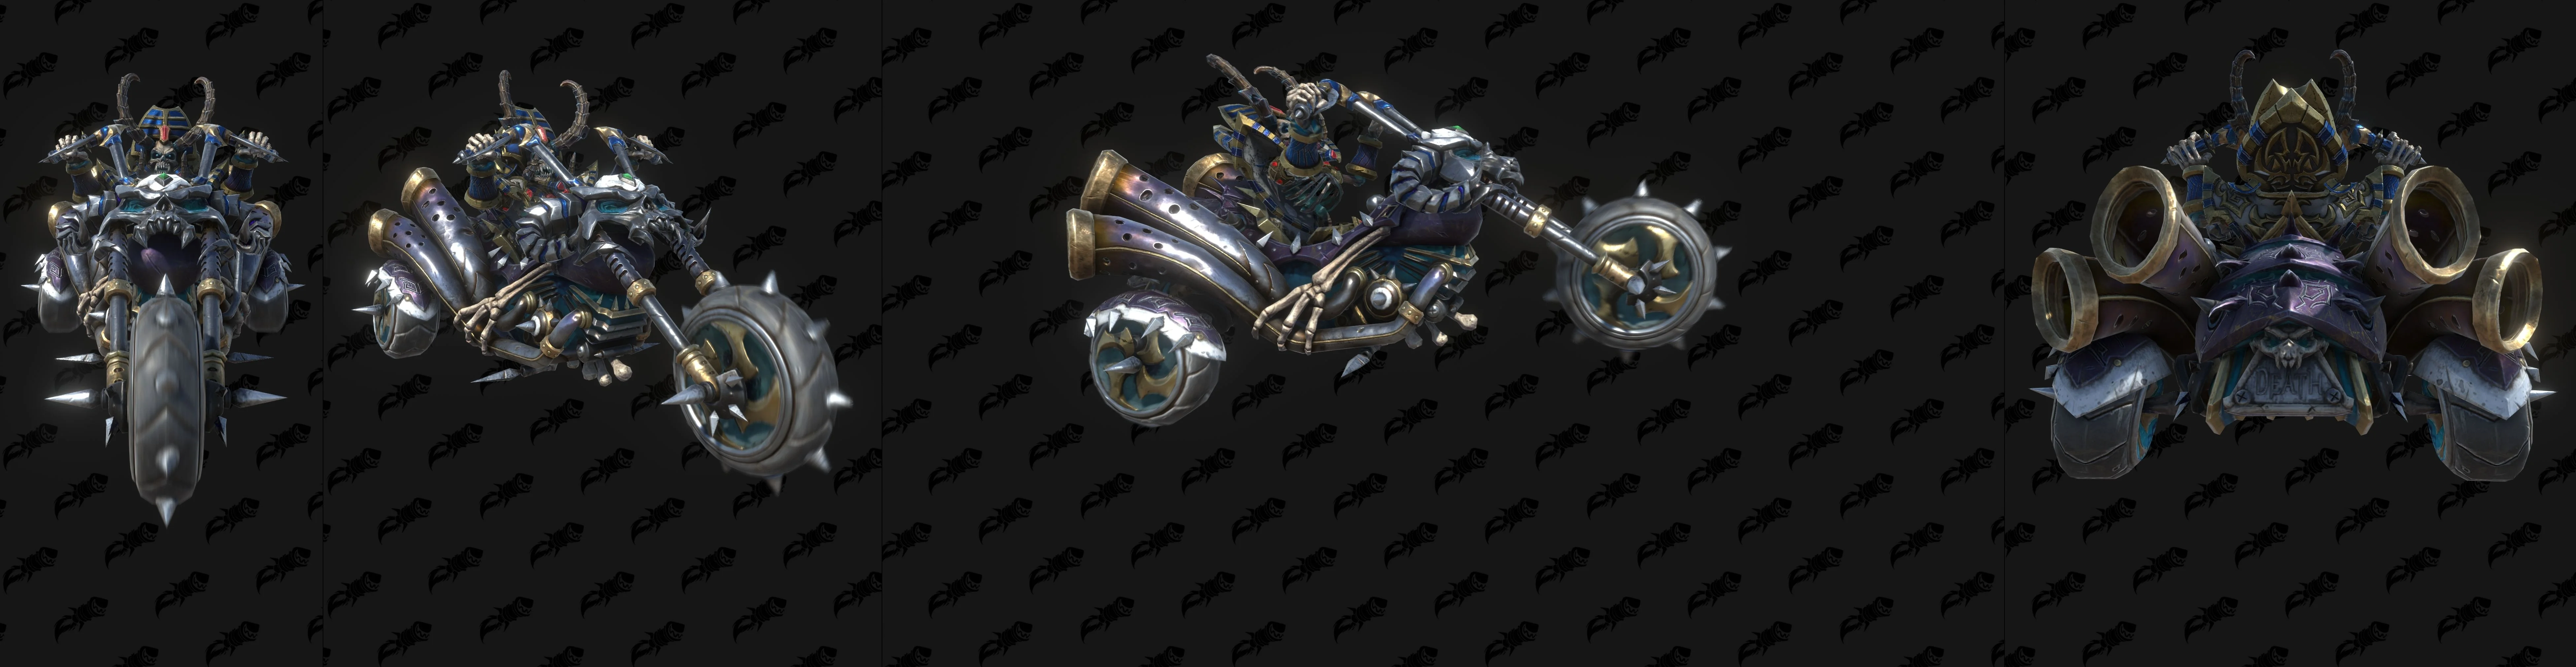 Модели строений разных фракций и Кел'Тузад на трицикле — новые утечки Warcraft III: Reforged - фото 1